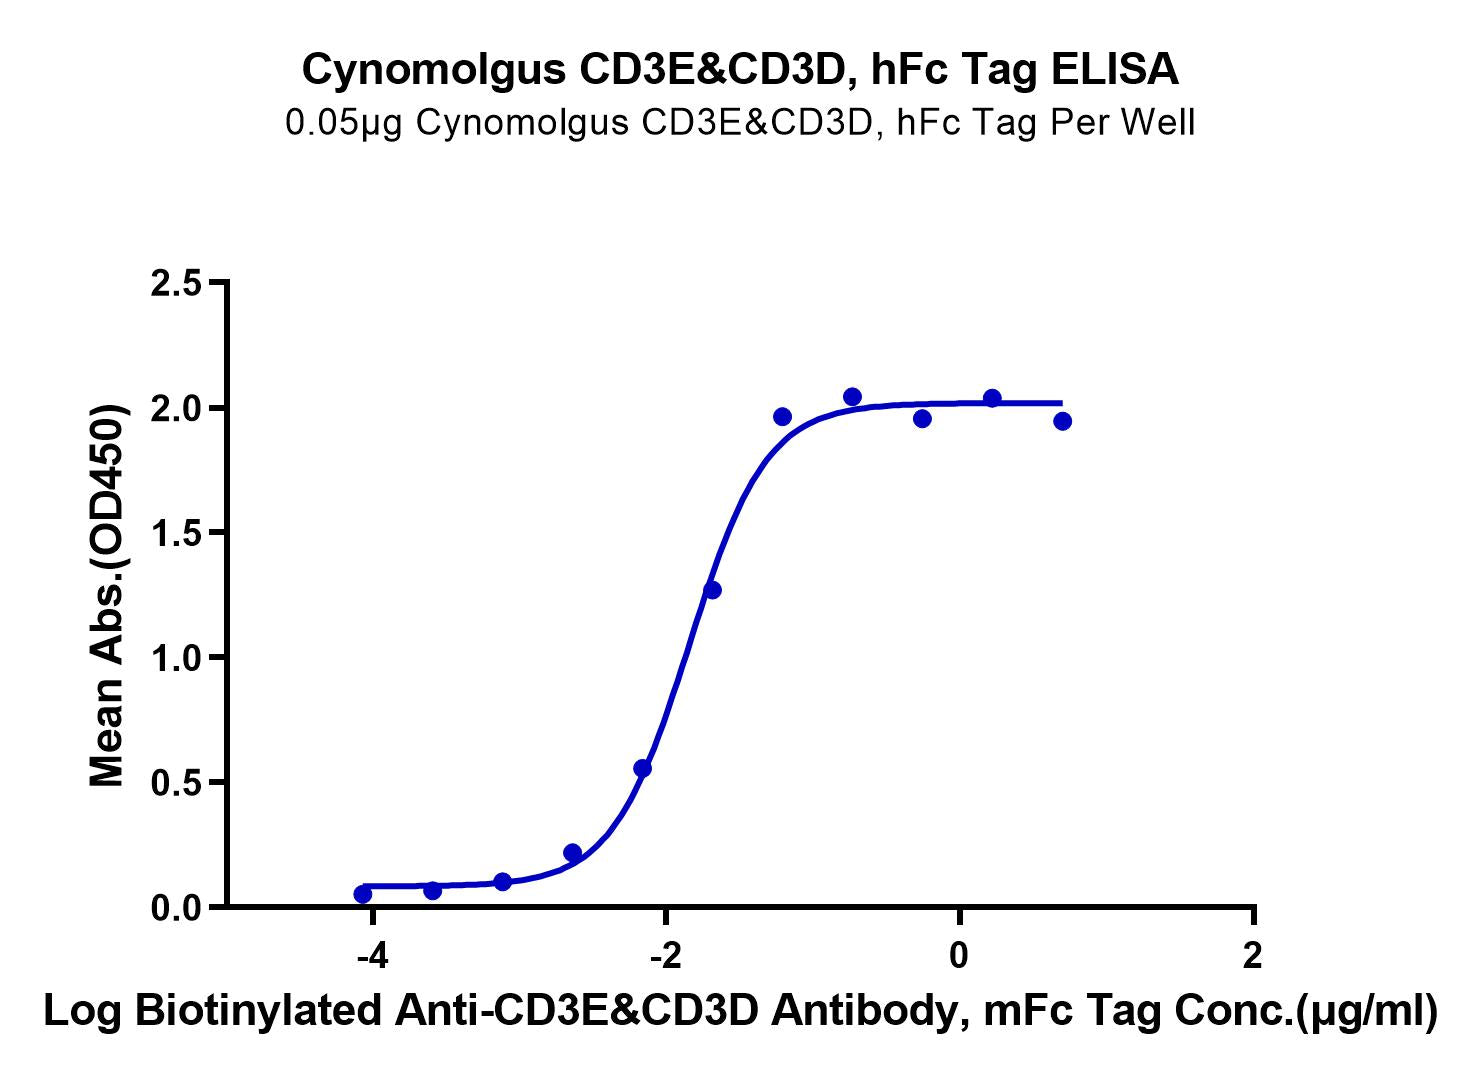 Cynomolgus CD3E&CD3D/CD3 epsilon&CD3 delta Protein (CD3-CM201)